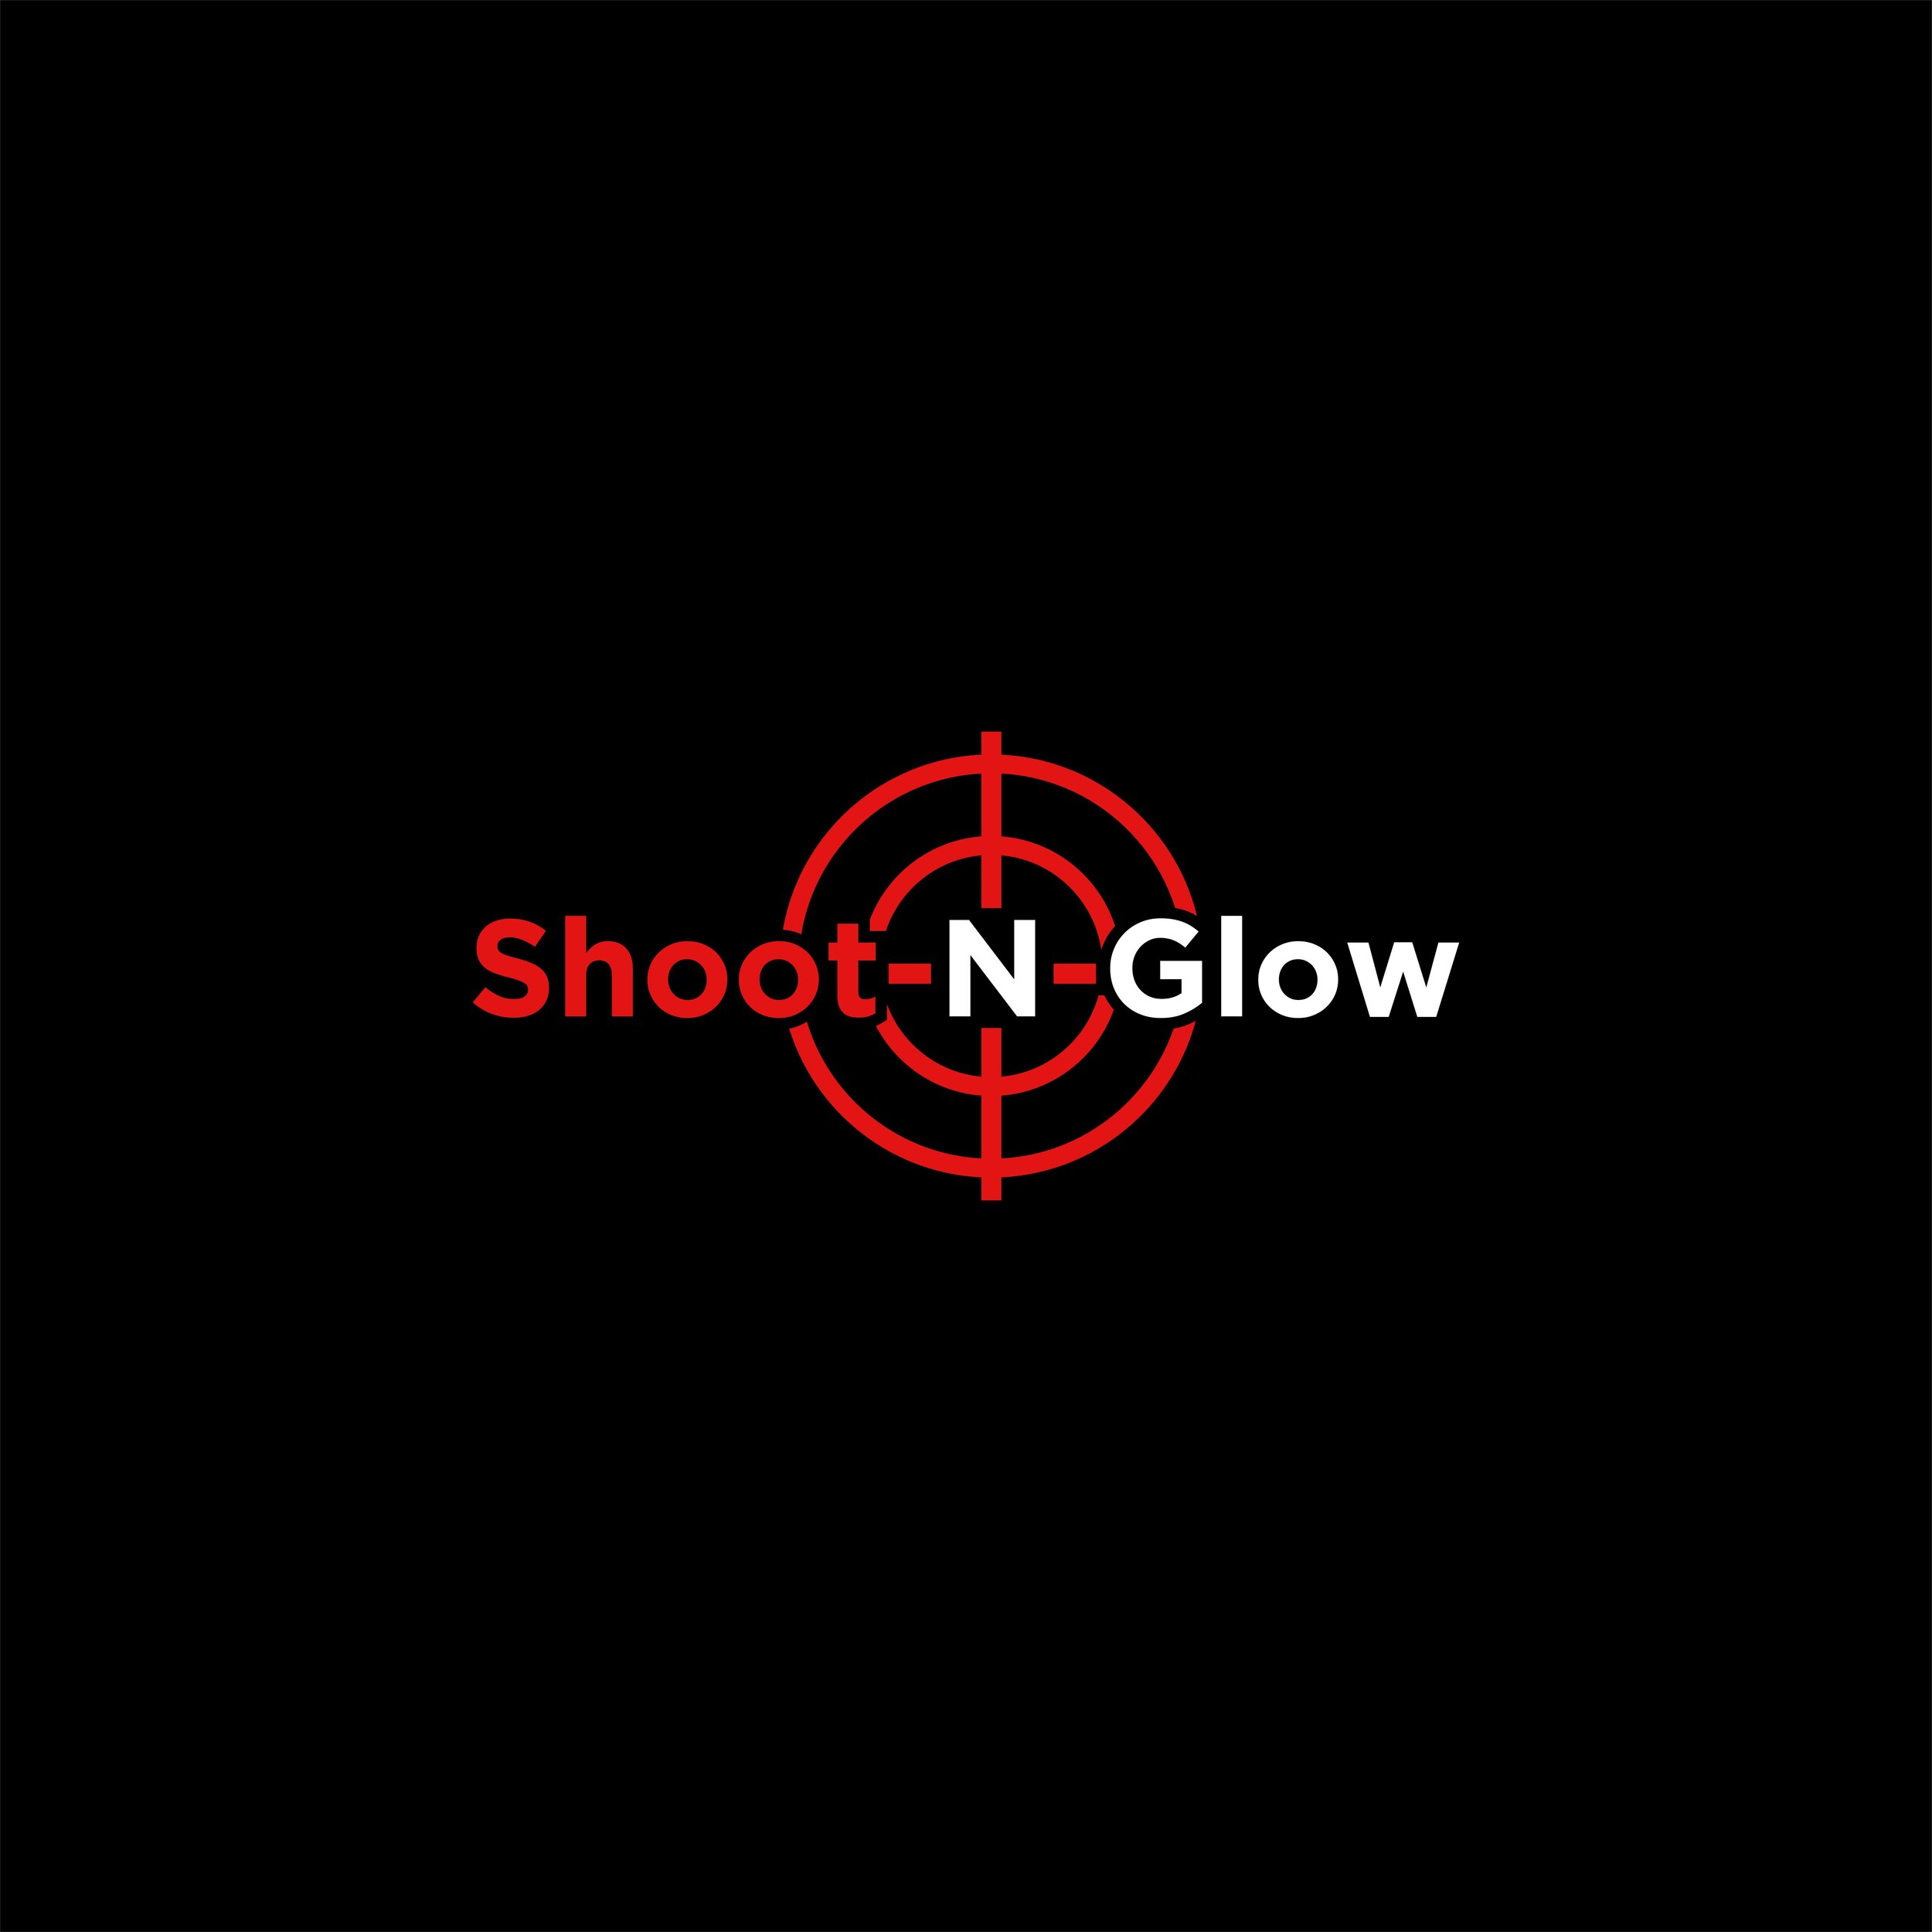 Shoot-N-Glow.jpg